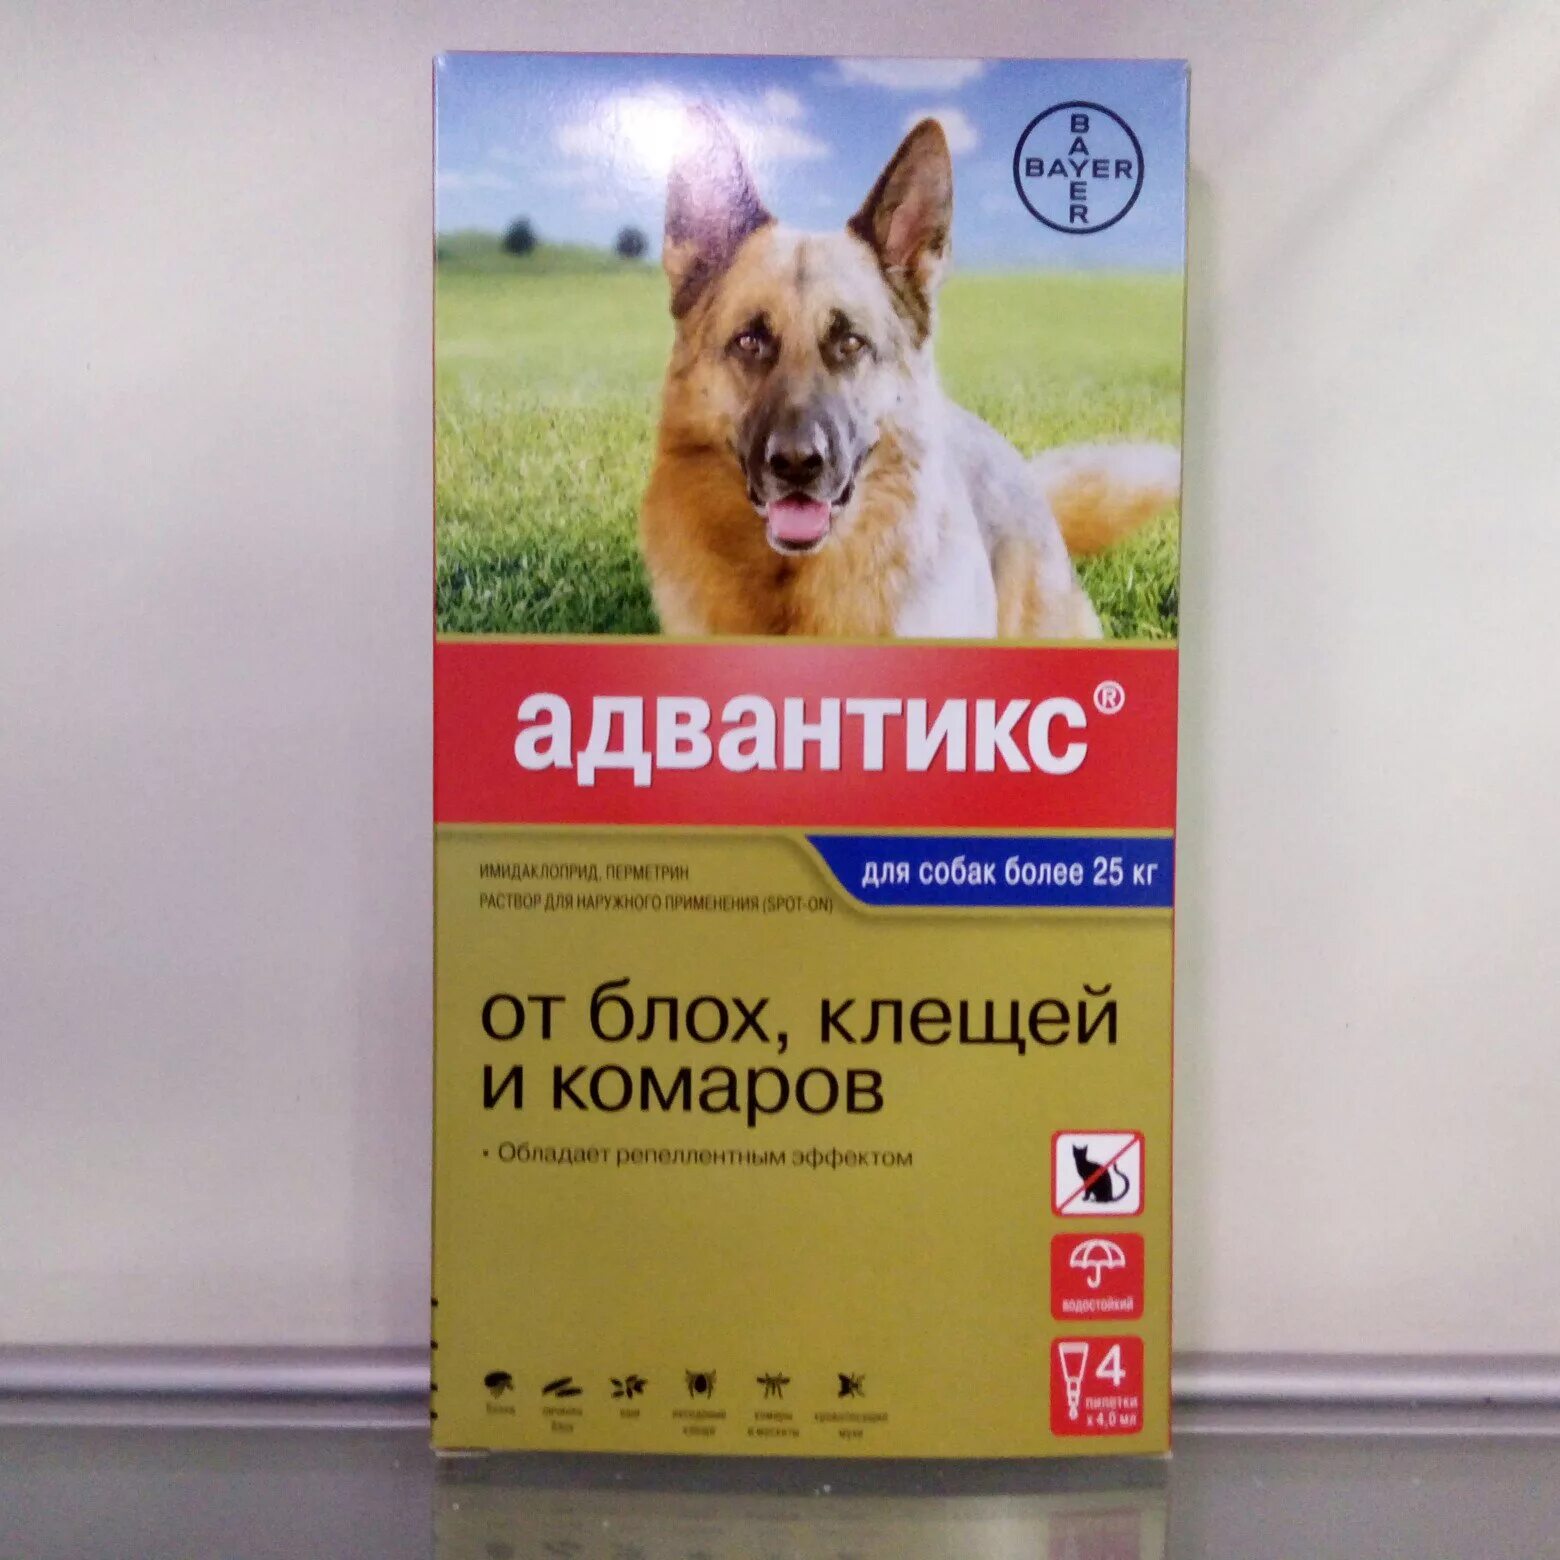 Адвантикс для собак до 4 кг. Адвантикс капли для собак 1пипетка. Адвантикс для собак 10-25 кг. Адвантикс для собак таблетки. Адвантикс до 4 кг.